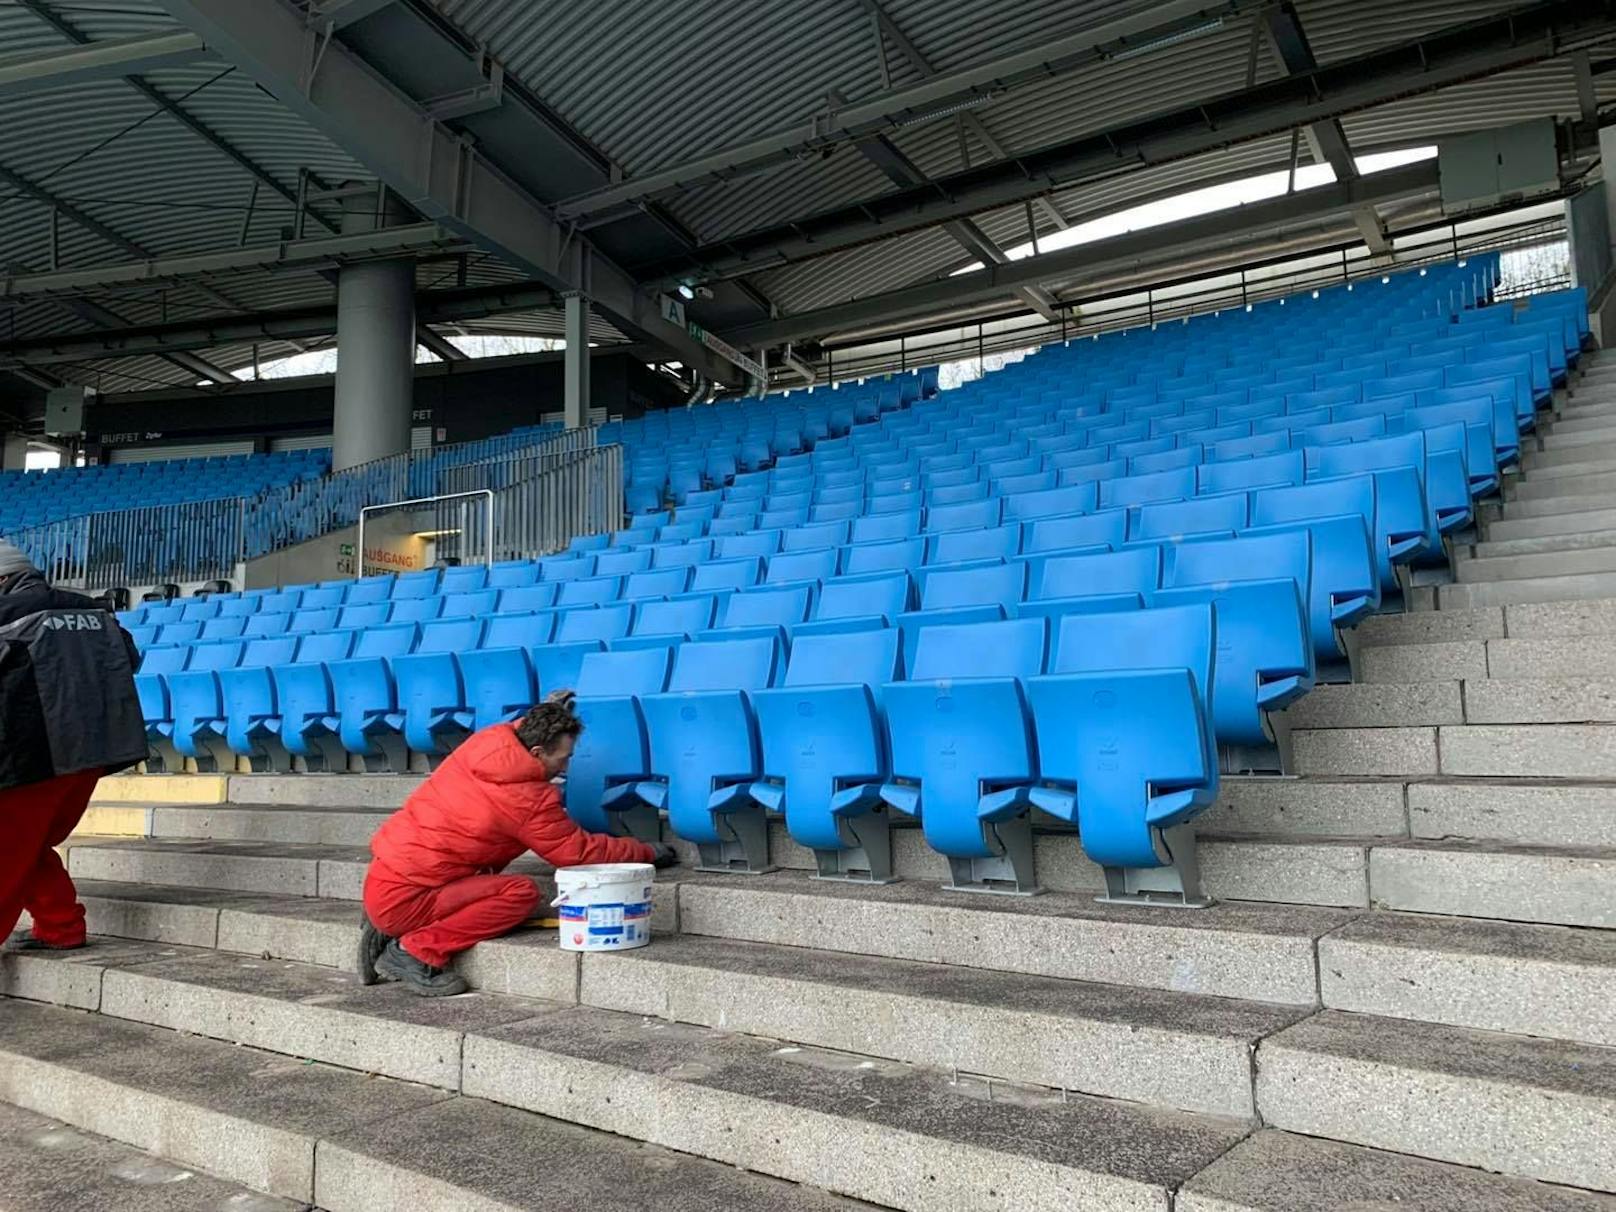 Einen Tag nach dem Match wurden schon die Sitze abmontiert.